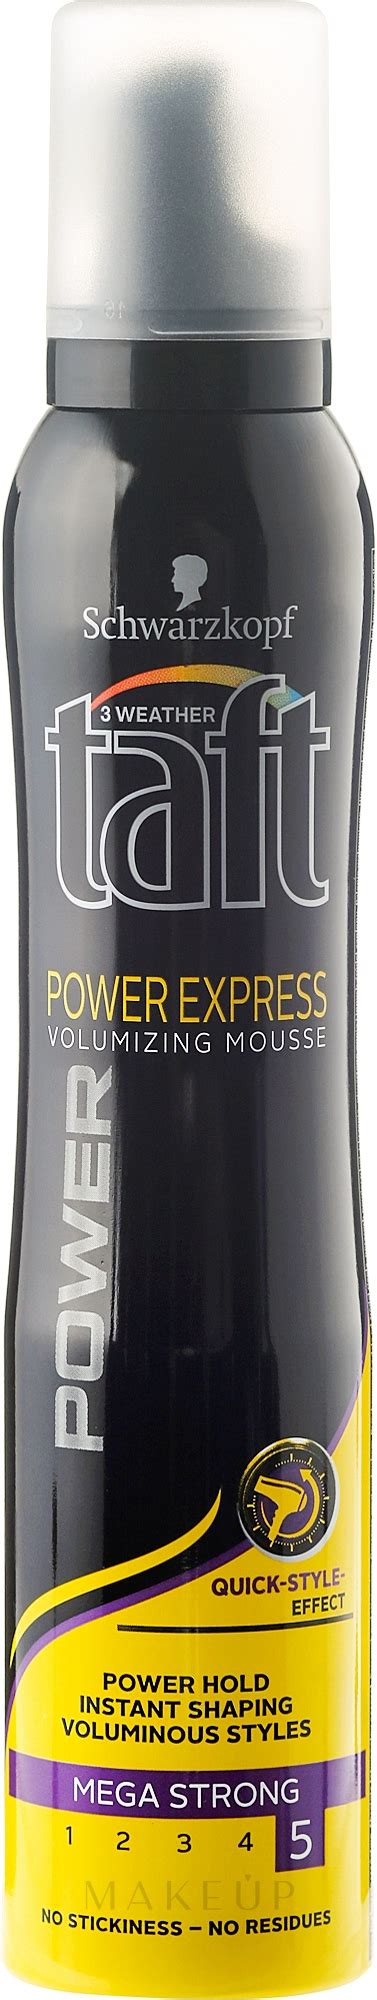 schwarzkopf taft power express mega strong 5 hair foam makeup